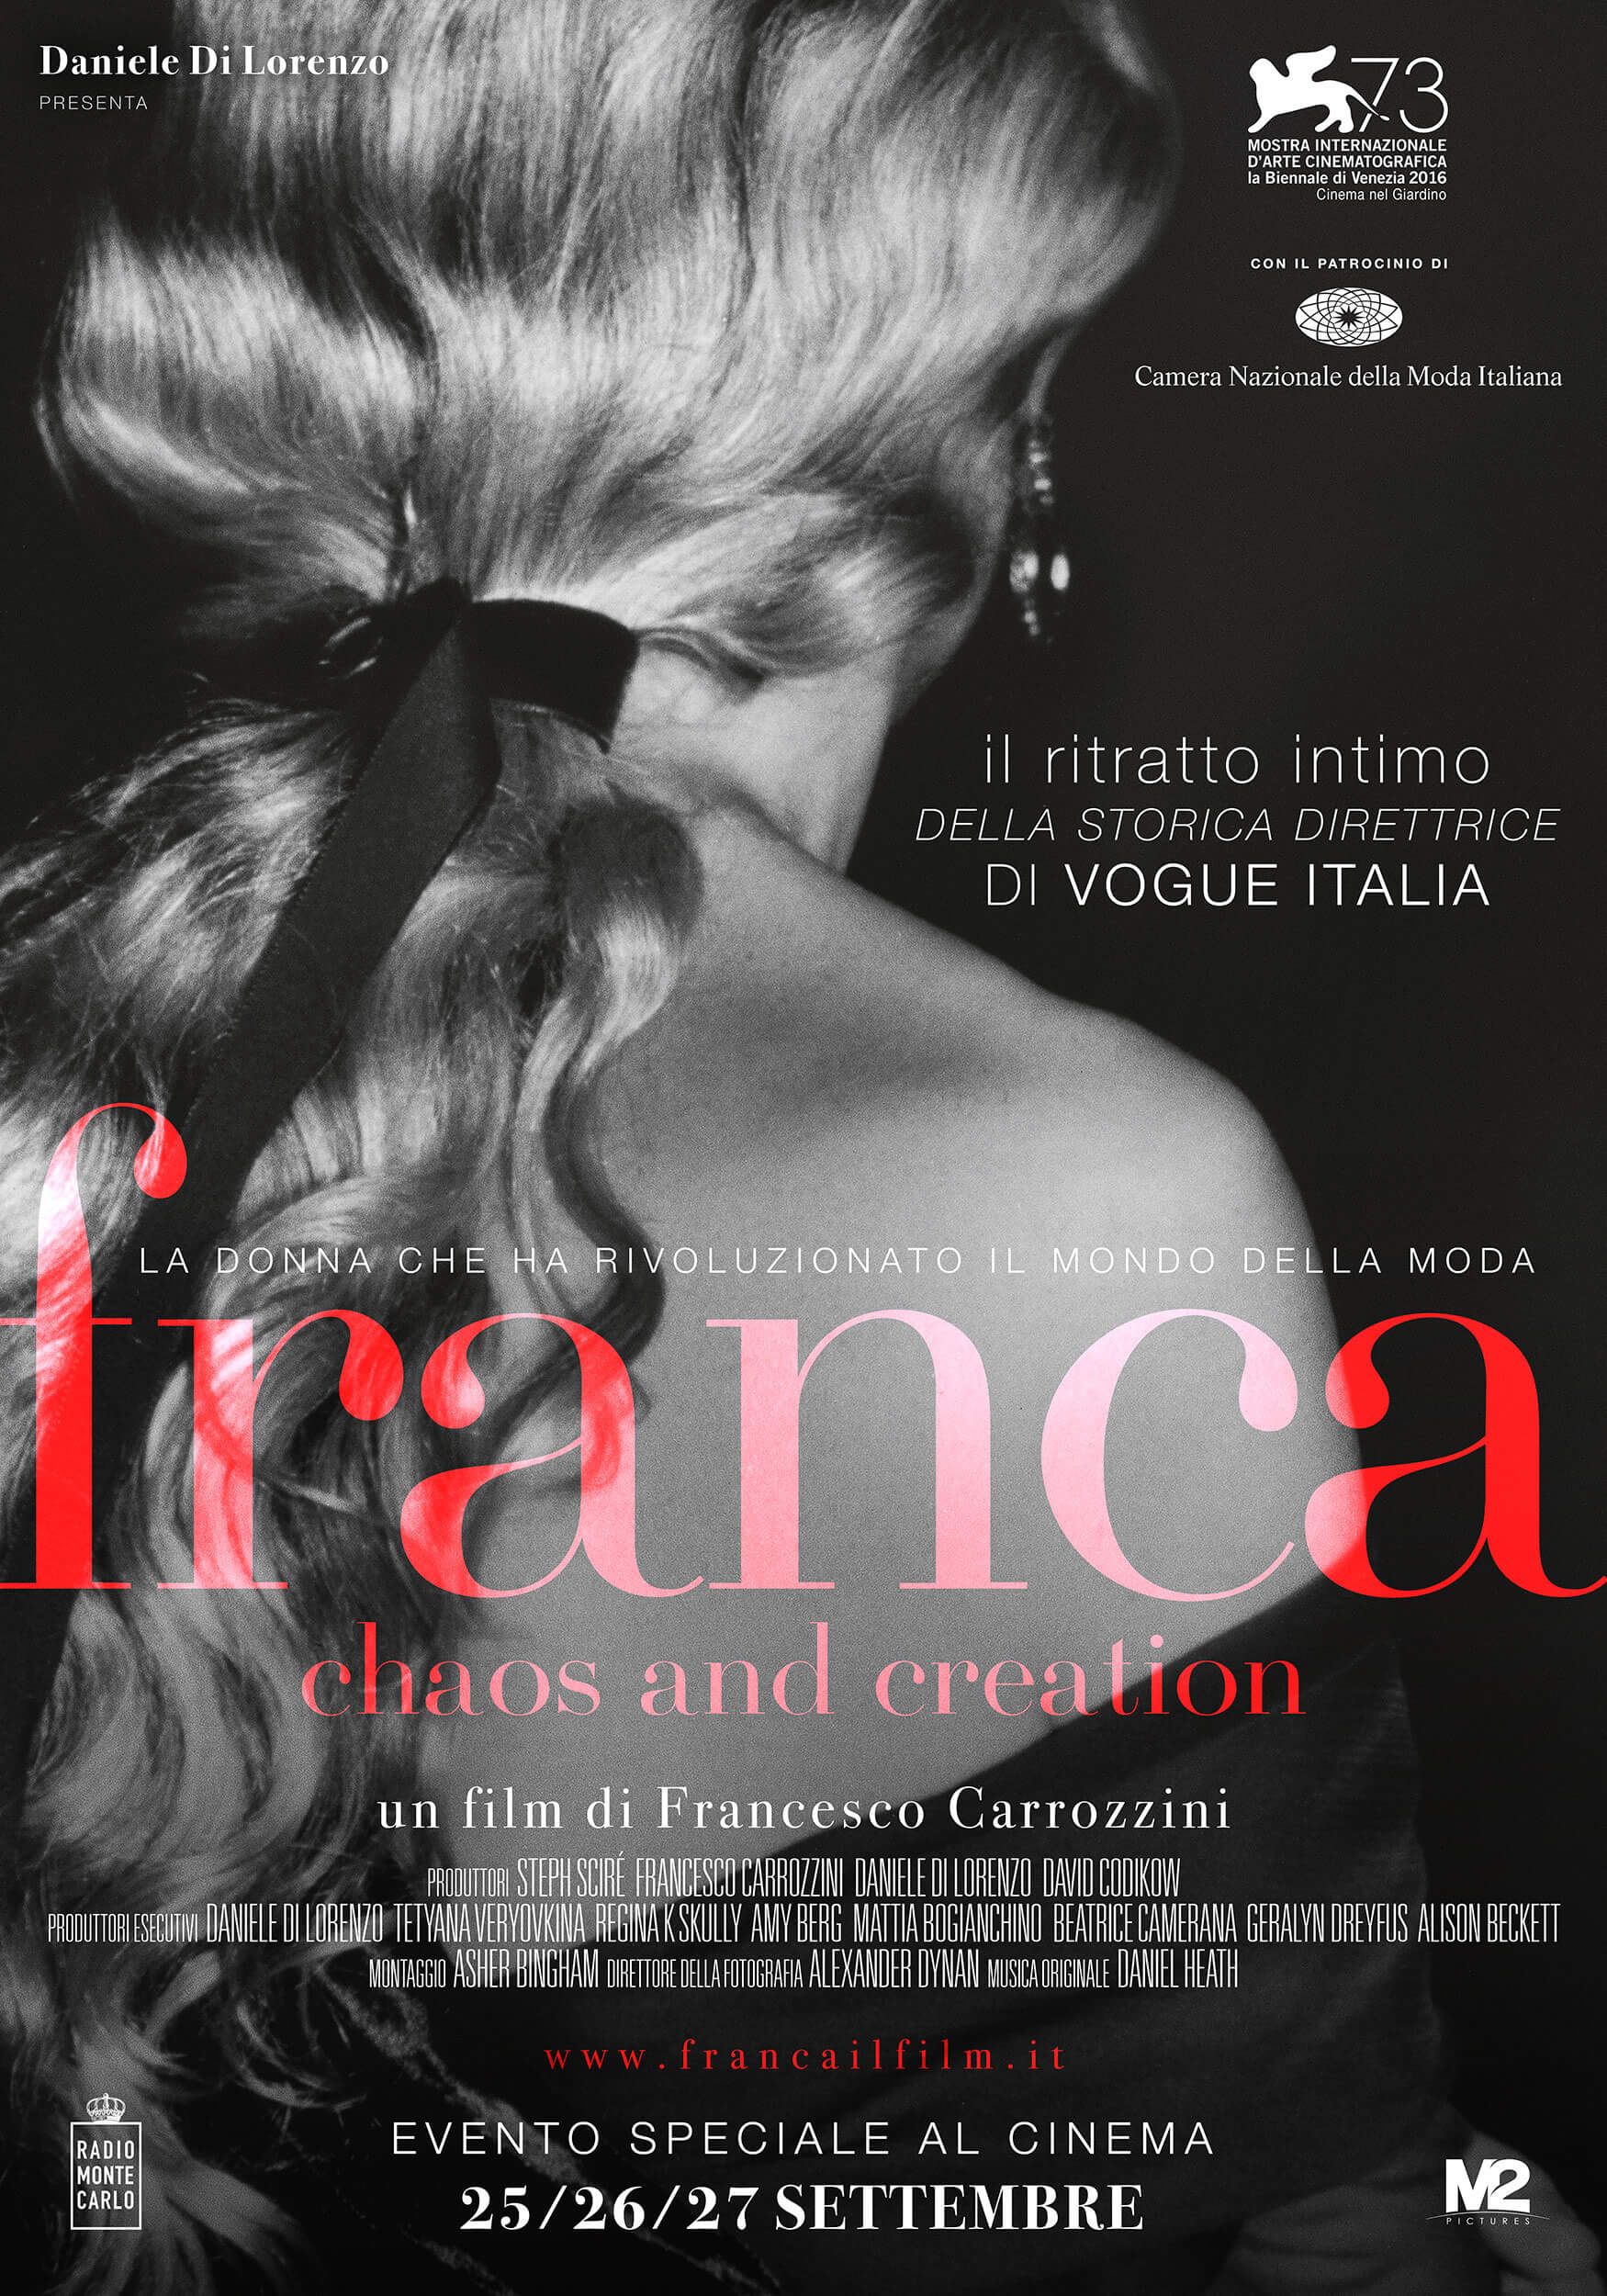 Franca Sozzani documentary